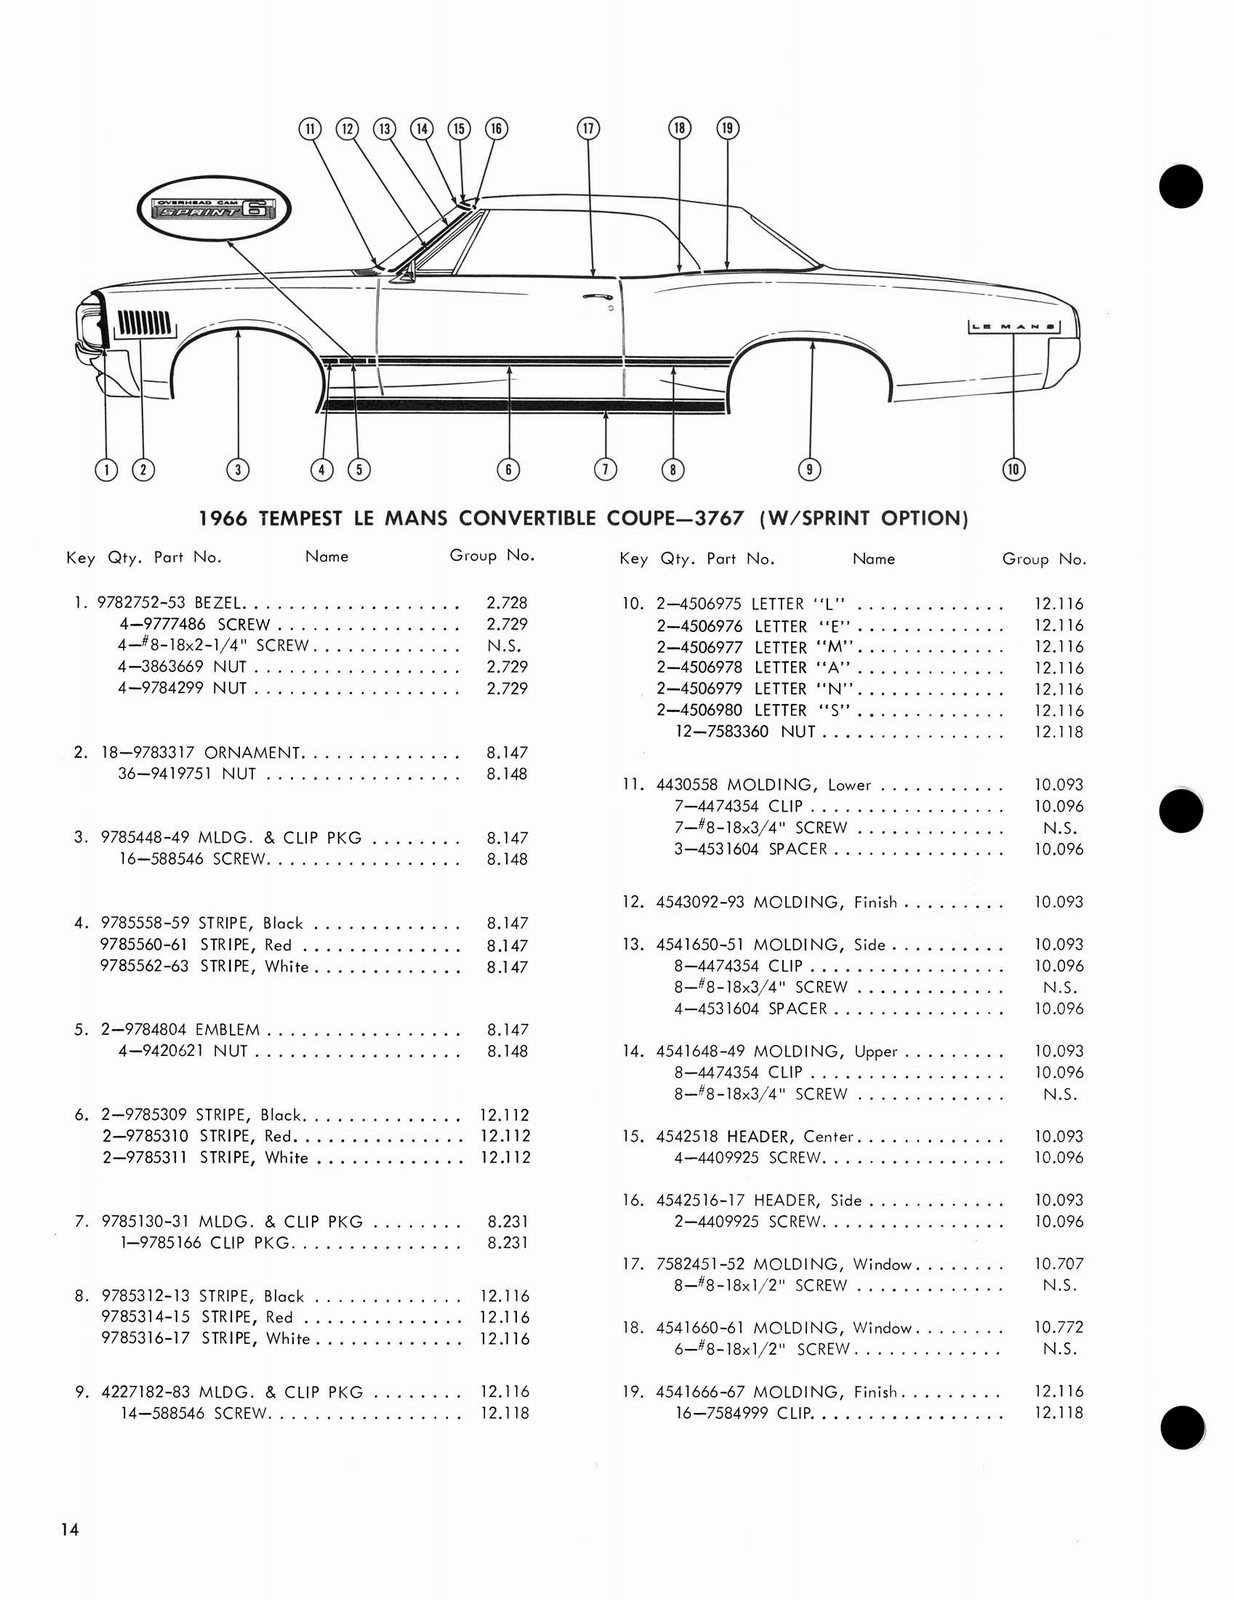 n_1966 Pontiac Molding and Clip Catalog-14.jpg